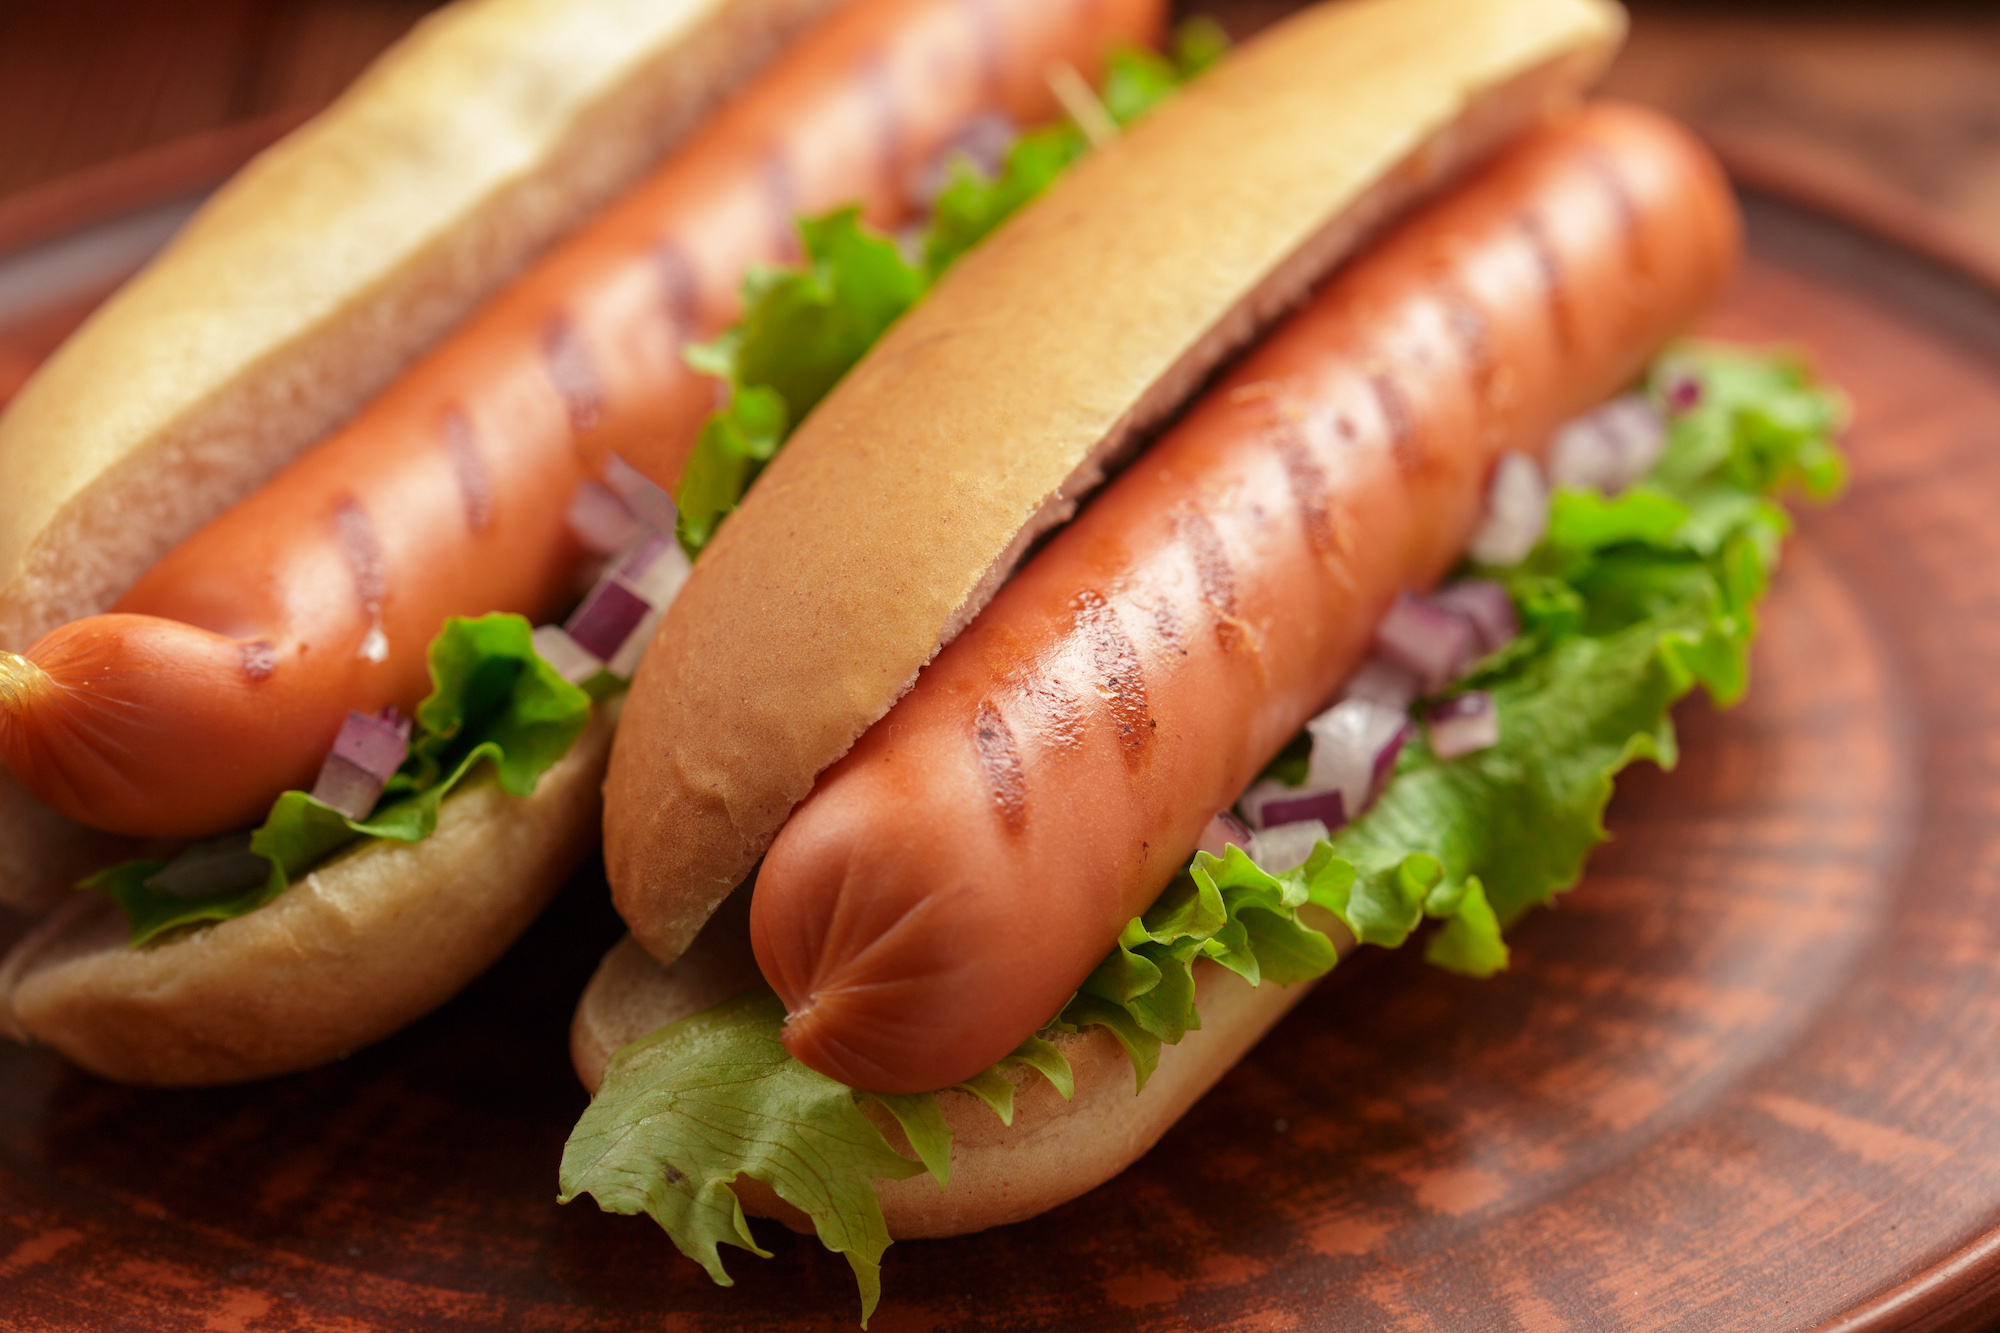 Hot Dog: panino con würstel grigliato, insalata e cipolla cruda